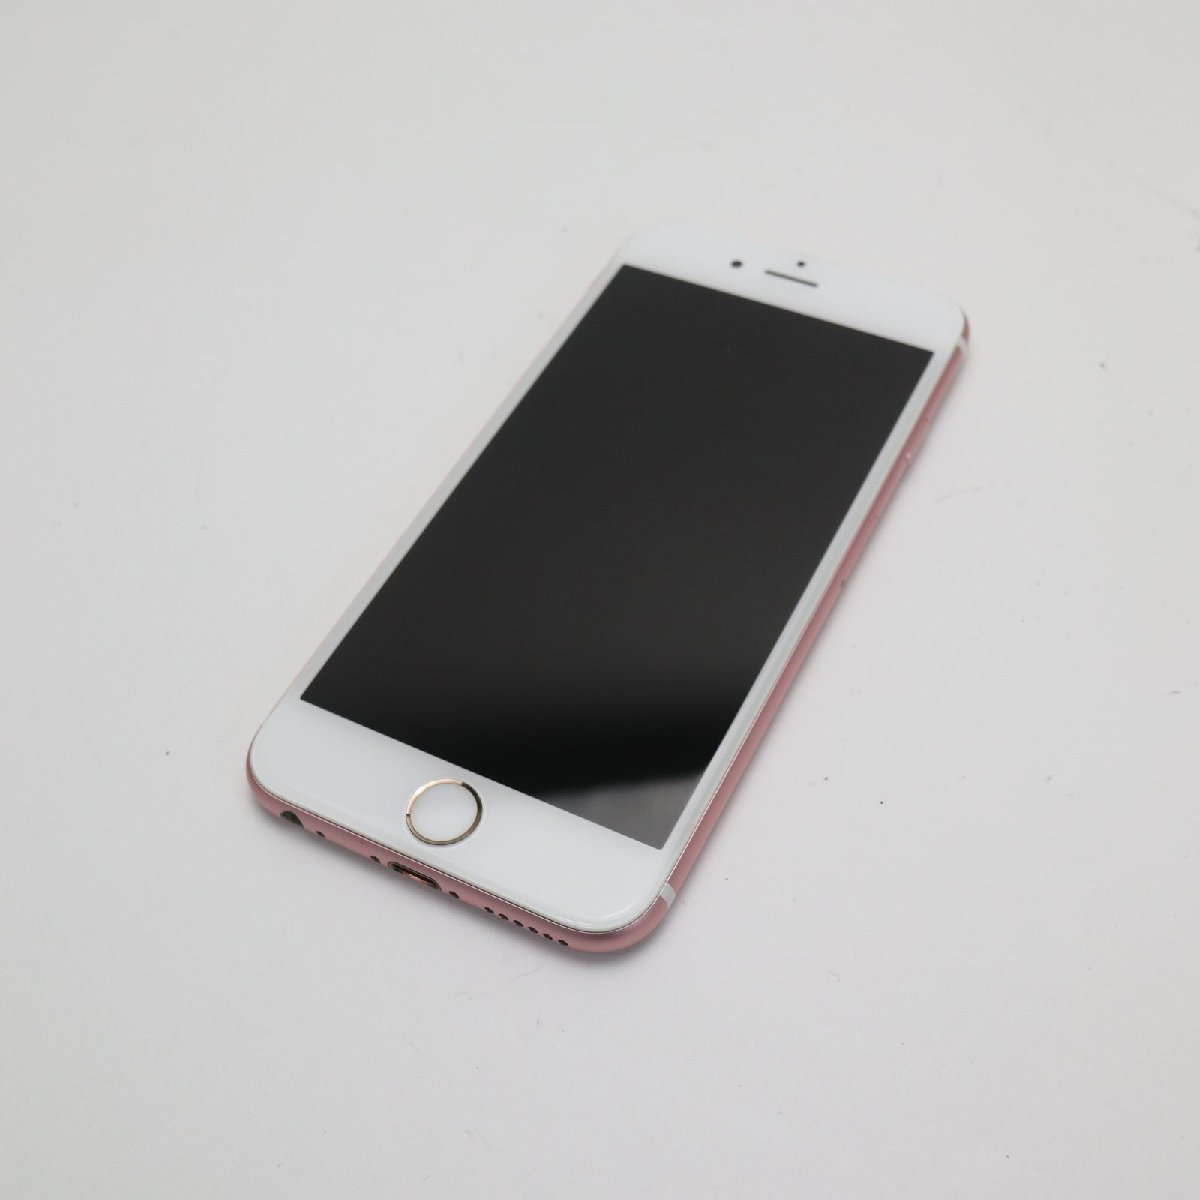 新品同様 SIMフリー iPhone6S 64GB ローズゴールド 即日発送 スマホ Apple 本体 白ロム あすつく 土日祝発送OK